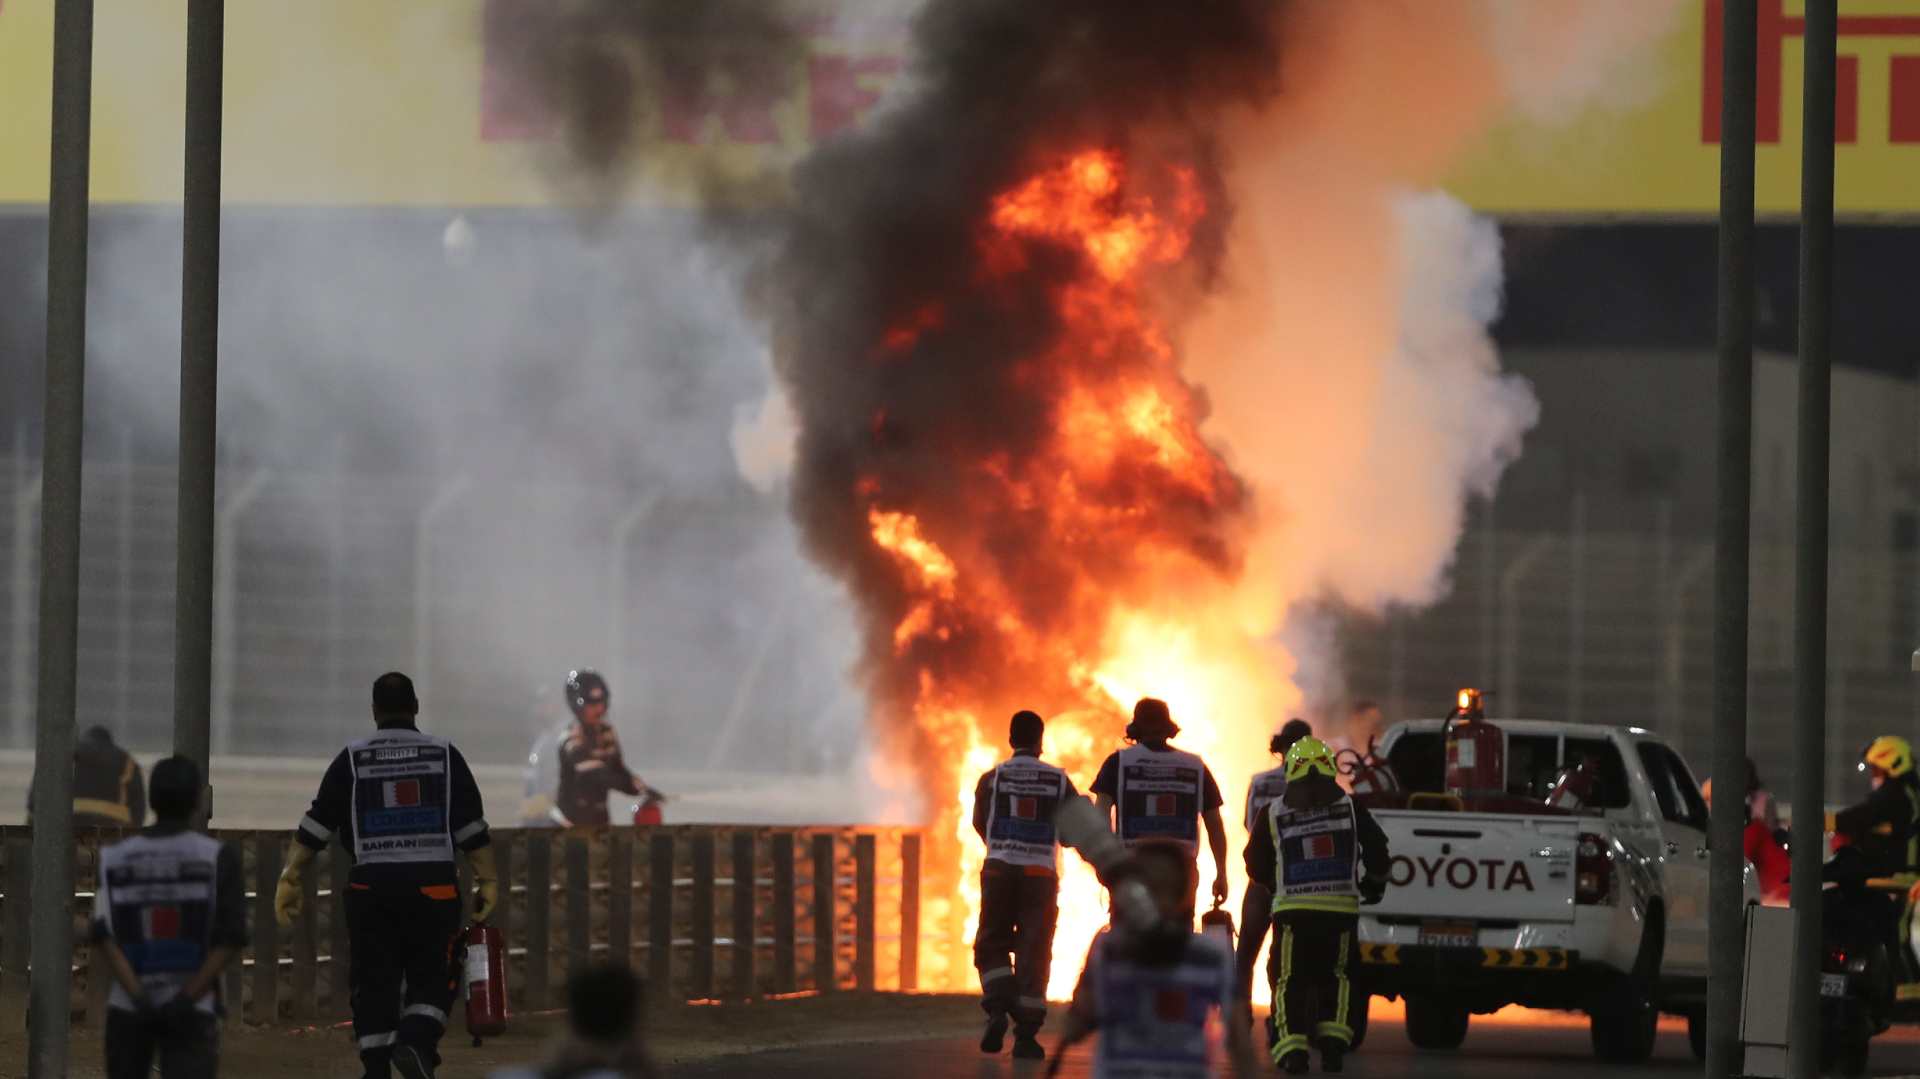 Već u prvom krugu prekinuta trka u Bahreinu, zapalio se bolid Hasa, vozač sa lakšim opekotinama 1